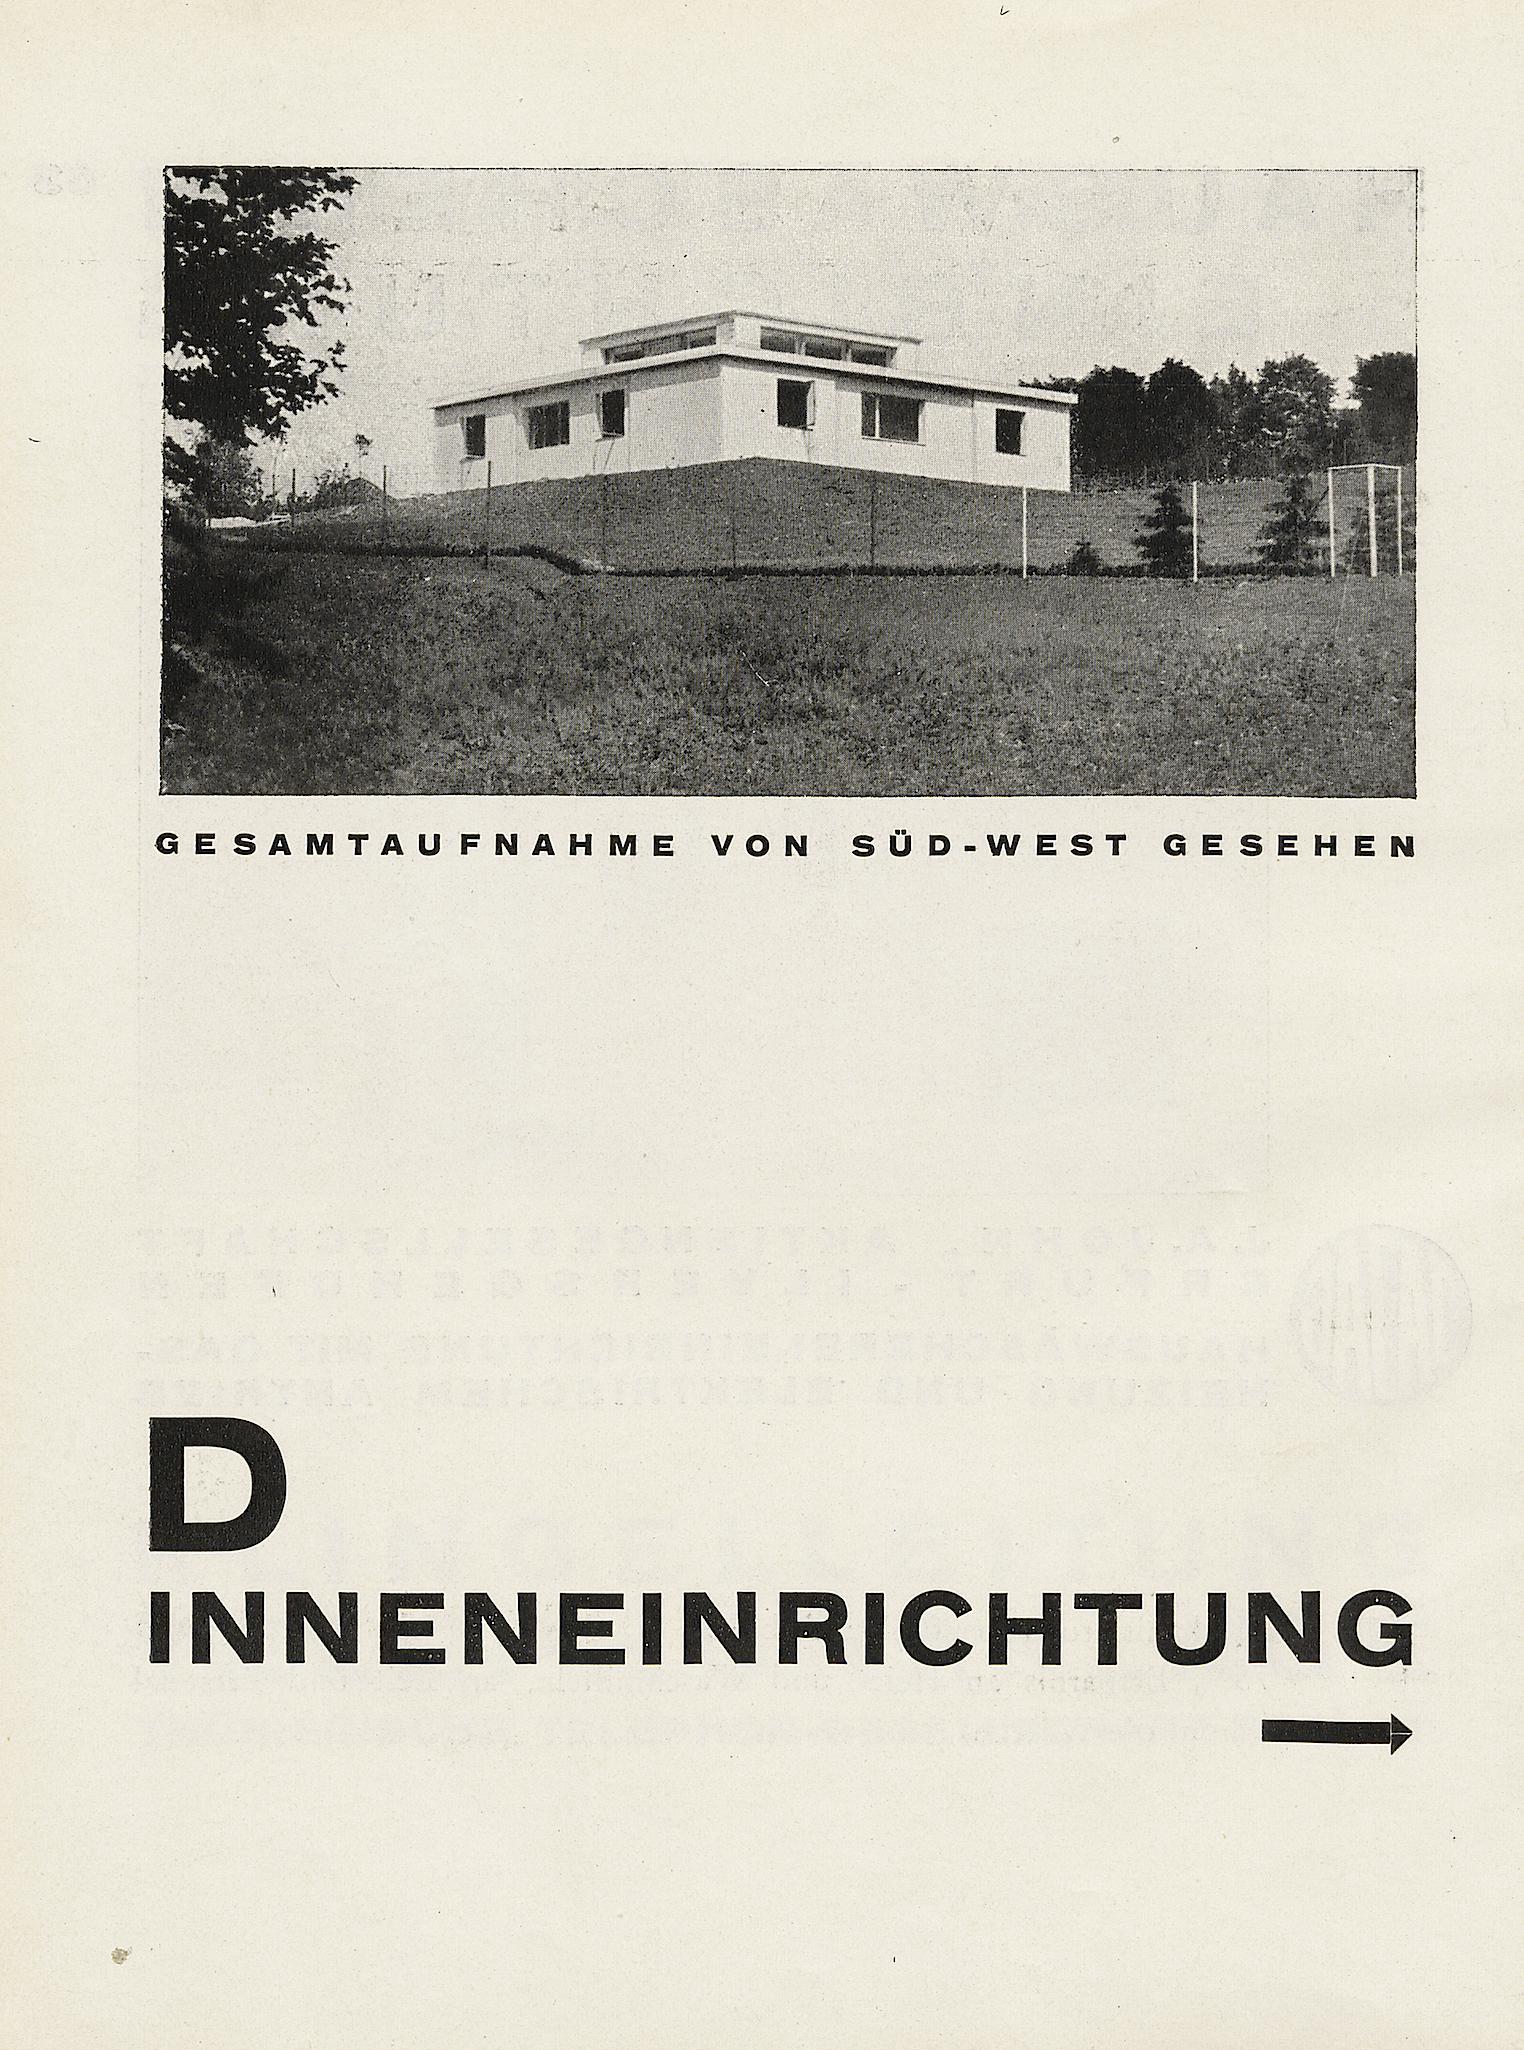 Ein Versuchshaus des Bauhauses in Weimar / Zusammengestellt von Adolf Meyer. — München : Albert Langen Verlag, 1925. — 78 s., ill. — (Bauhausbücher 3)